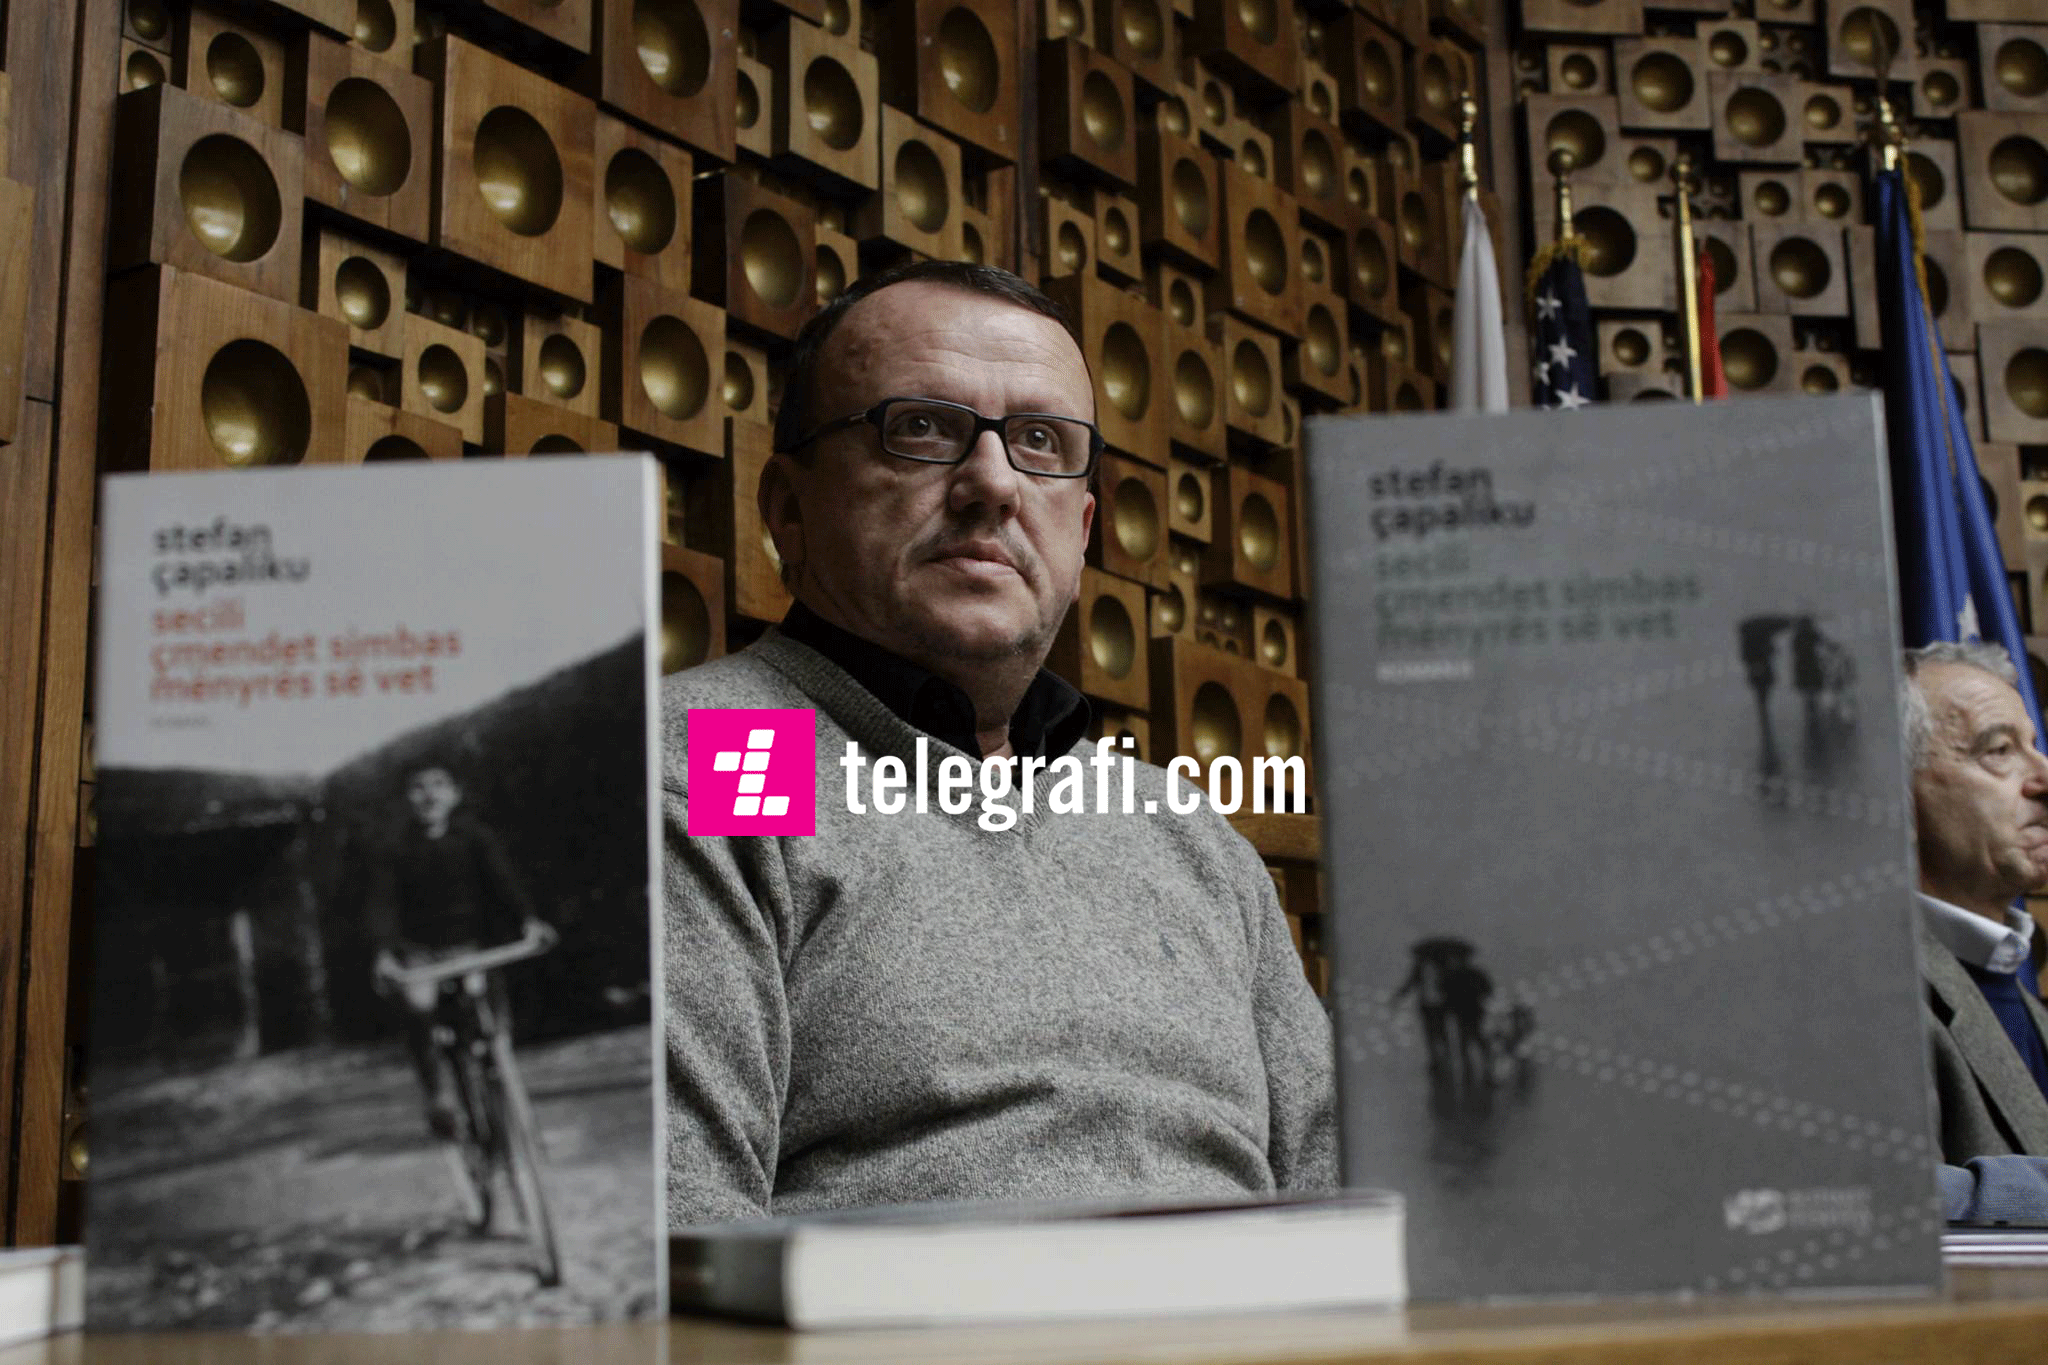 Shkrimtari Stefan Çapaliku promovon veprën e tij me dy vëllime “Secili çmendet simbas mënyrës së vet” në Prishtinë (Foto)